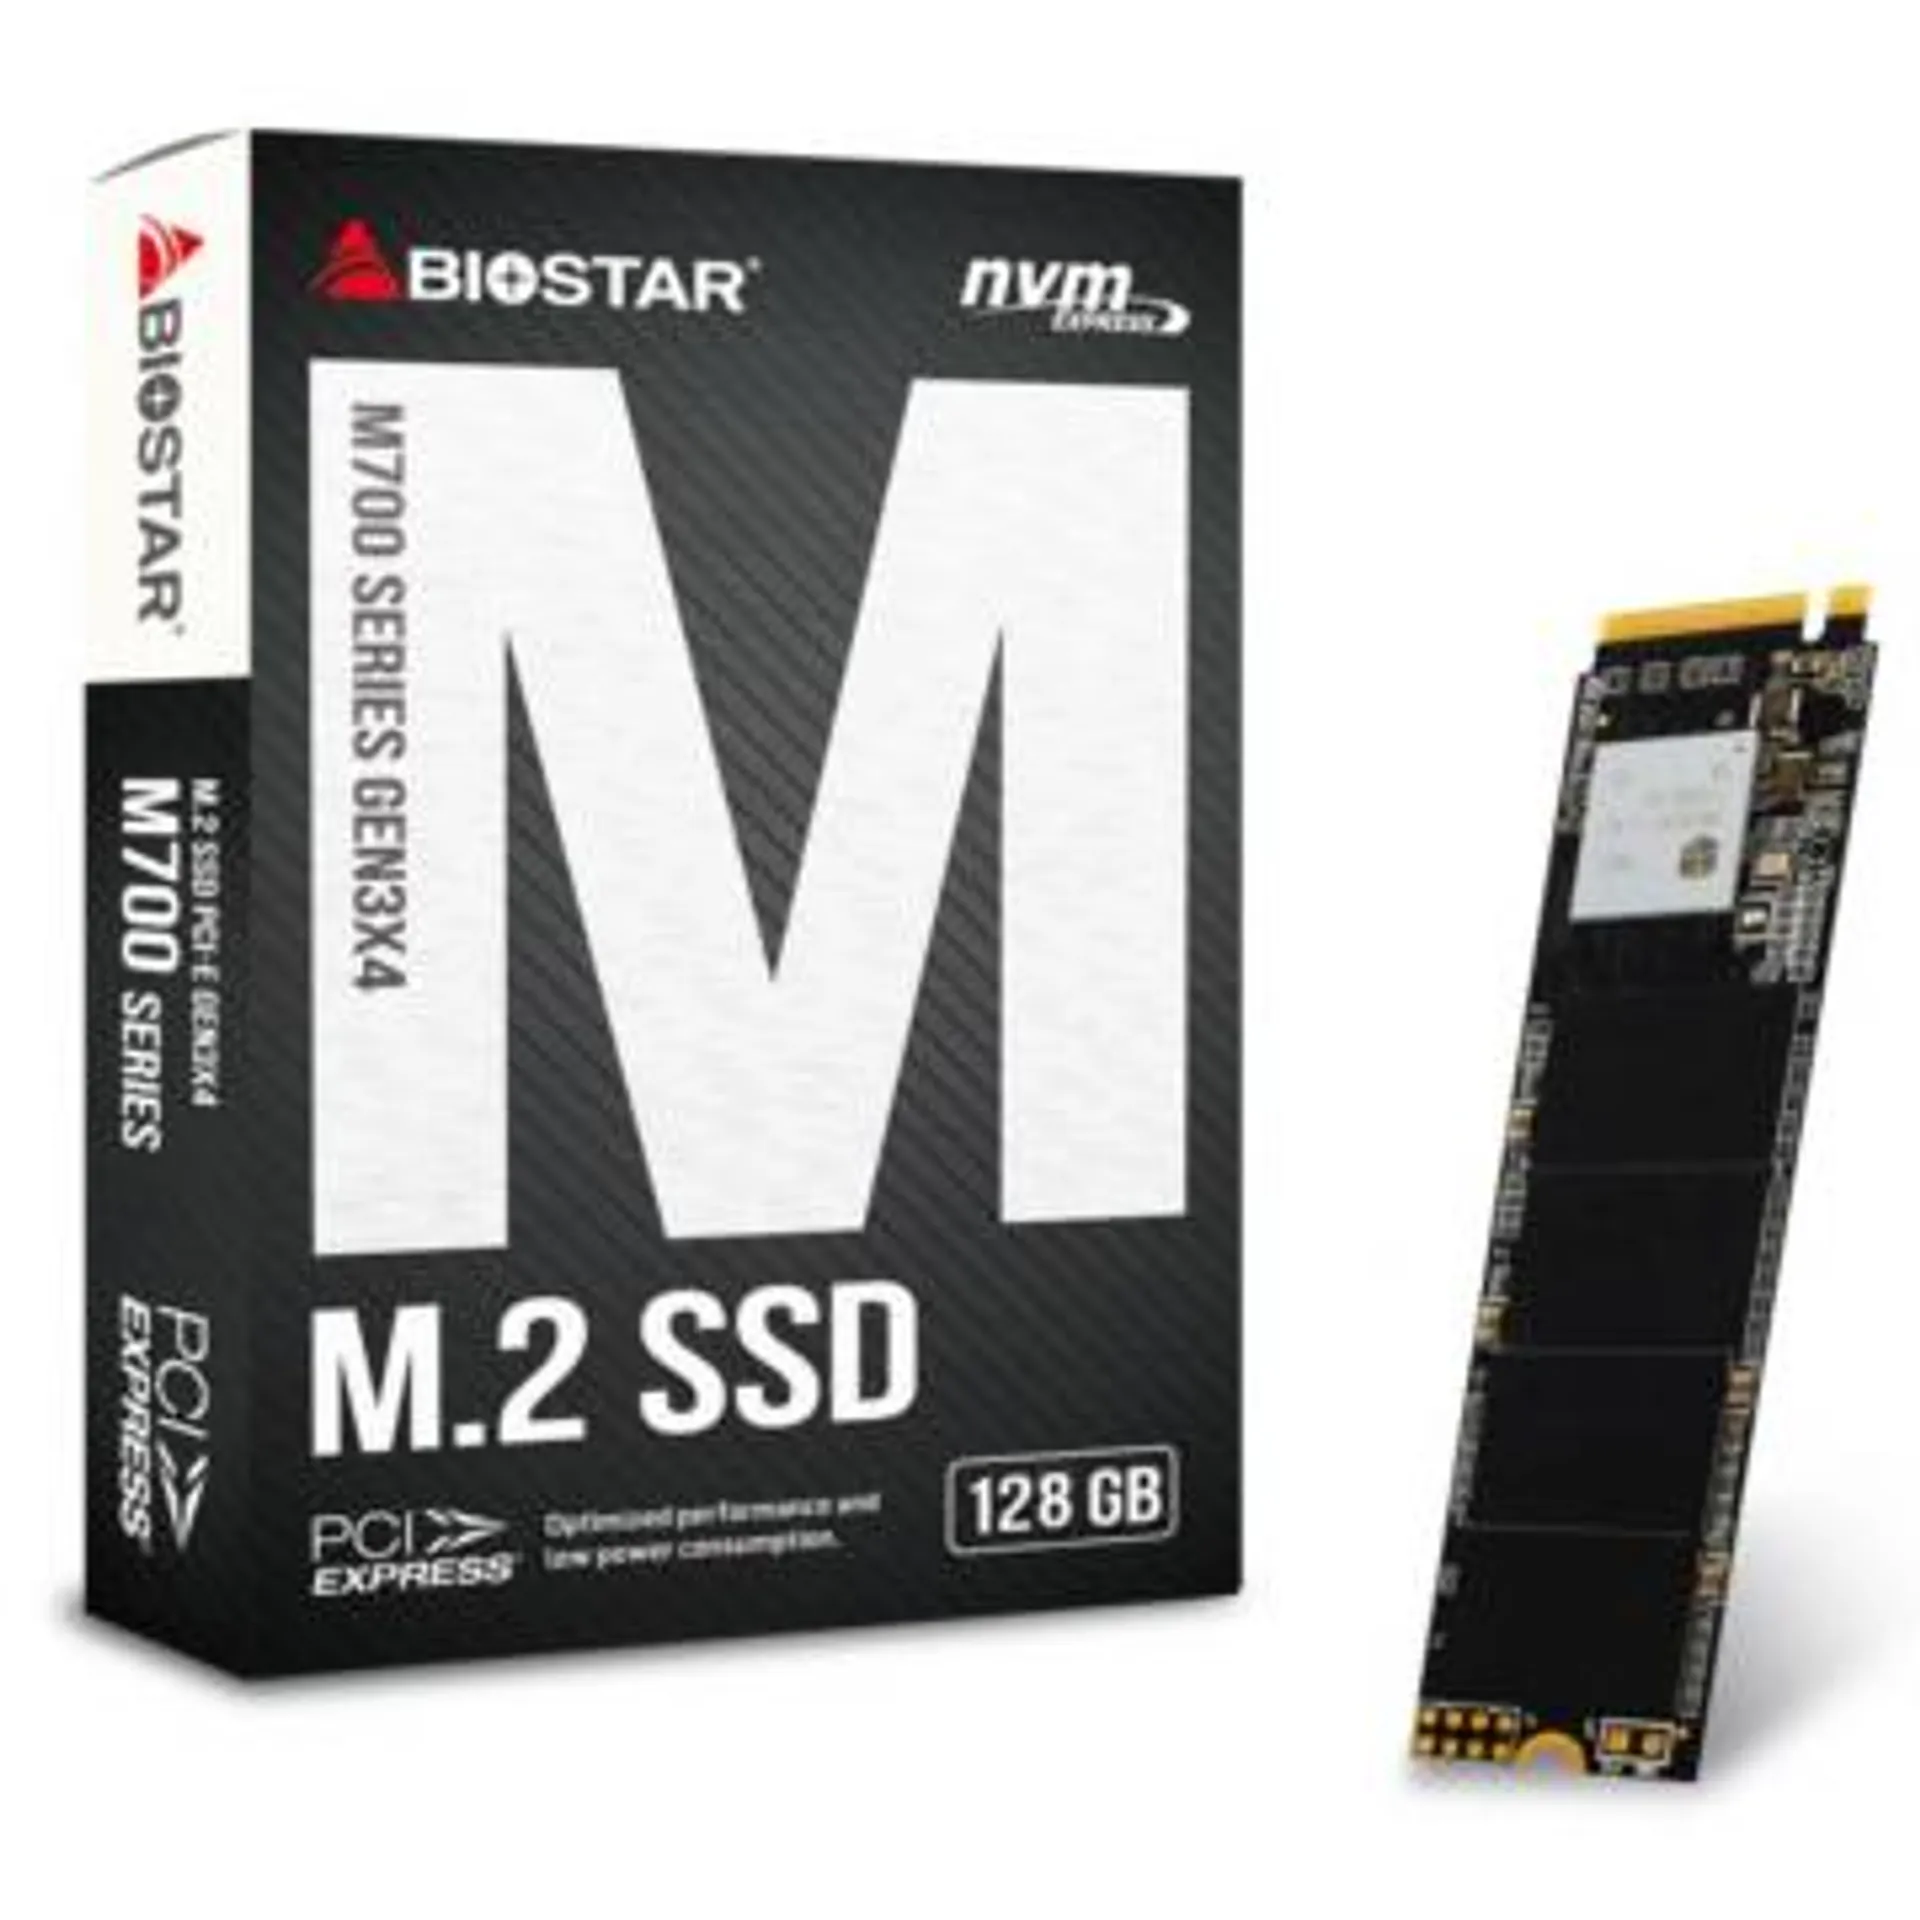 Biostar 128GB SSD Drive M700 M.2 NVMe PCI-E x4 Gen3 PC Laptop